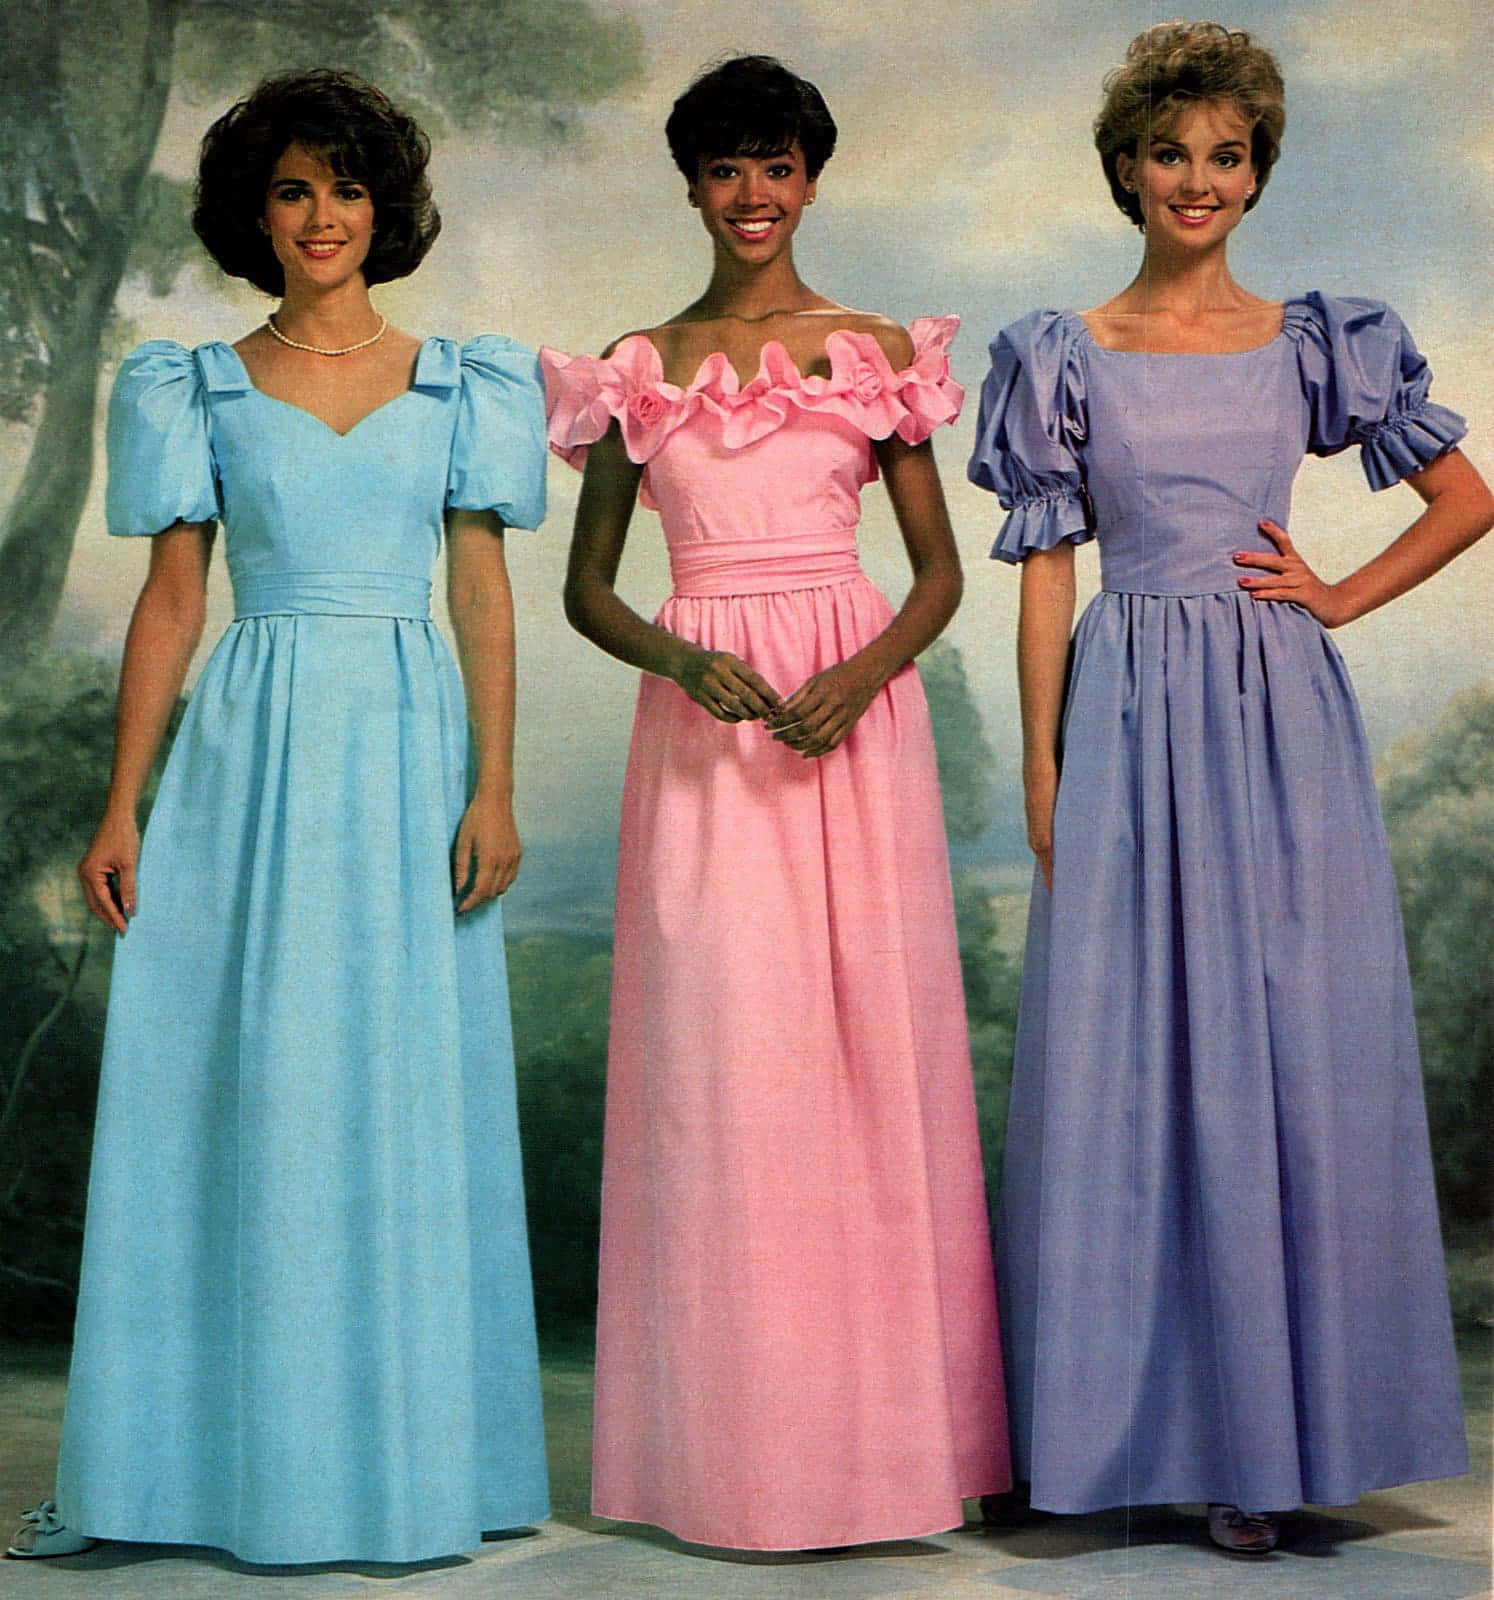 Imagende Un Vestido Pastel De Los Años 80 En Un Baile De Promoción.